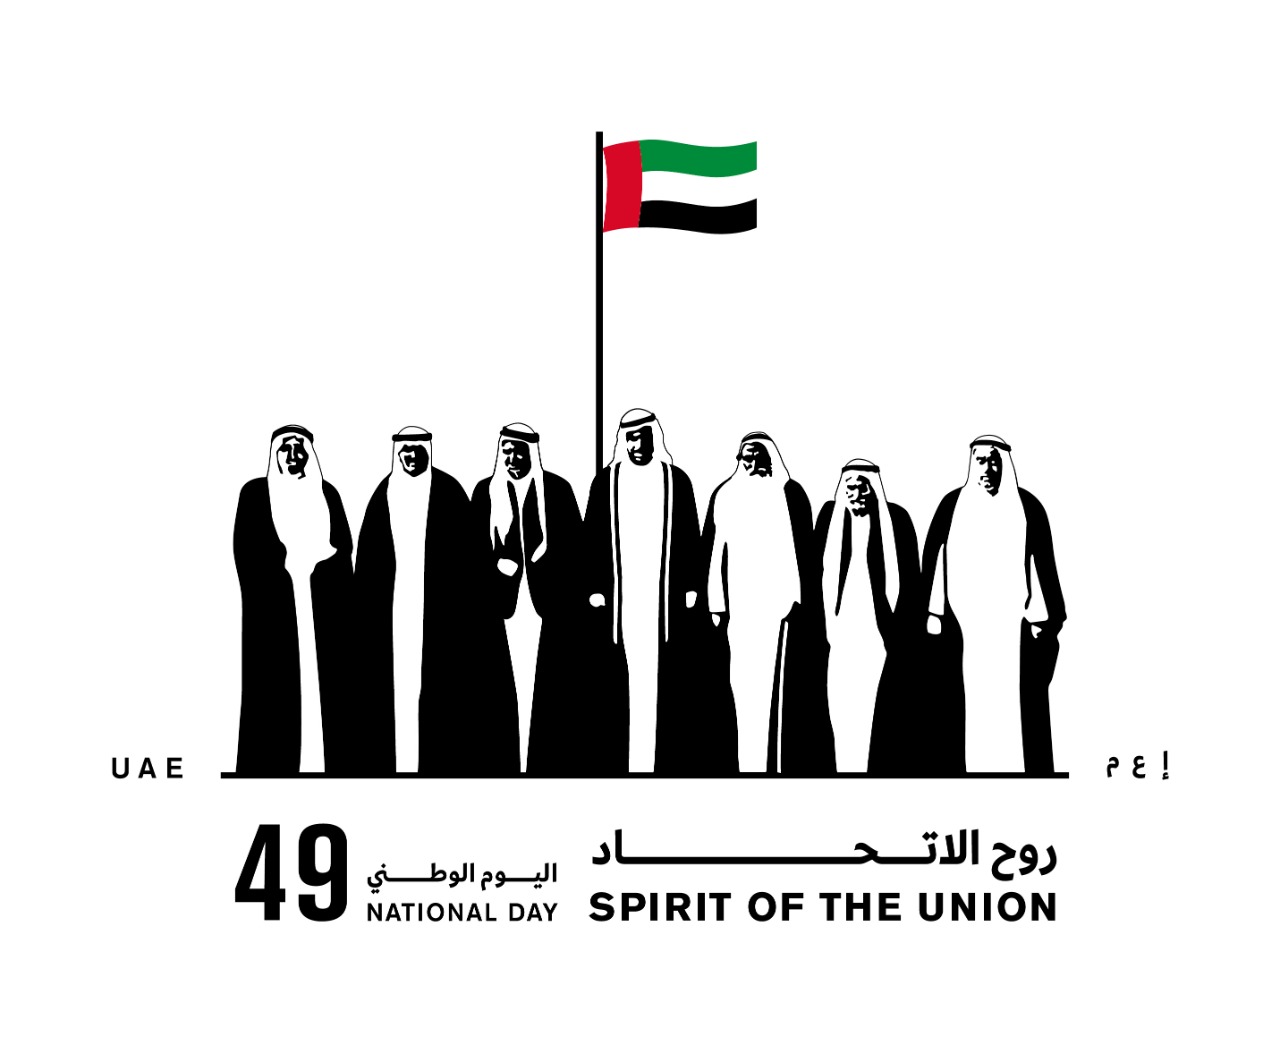 انطلاق الاحتفال الرسمي باليوم الوطني 49 غرس الاتحاد في 2 ديسمبر عبر الإمارات أخبار وتقارير البيان